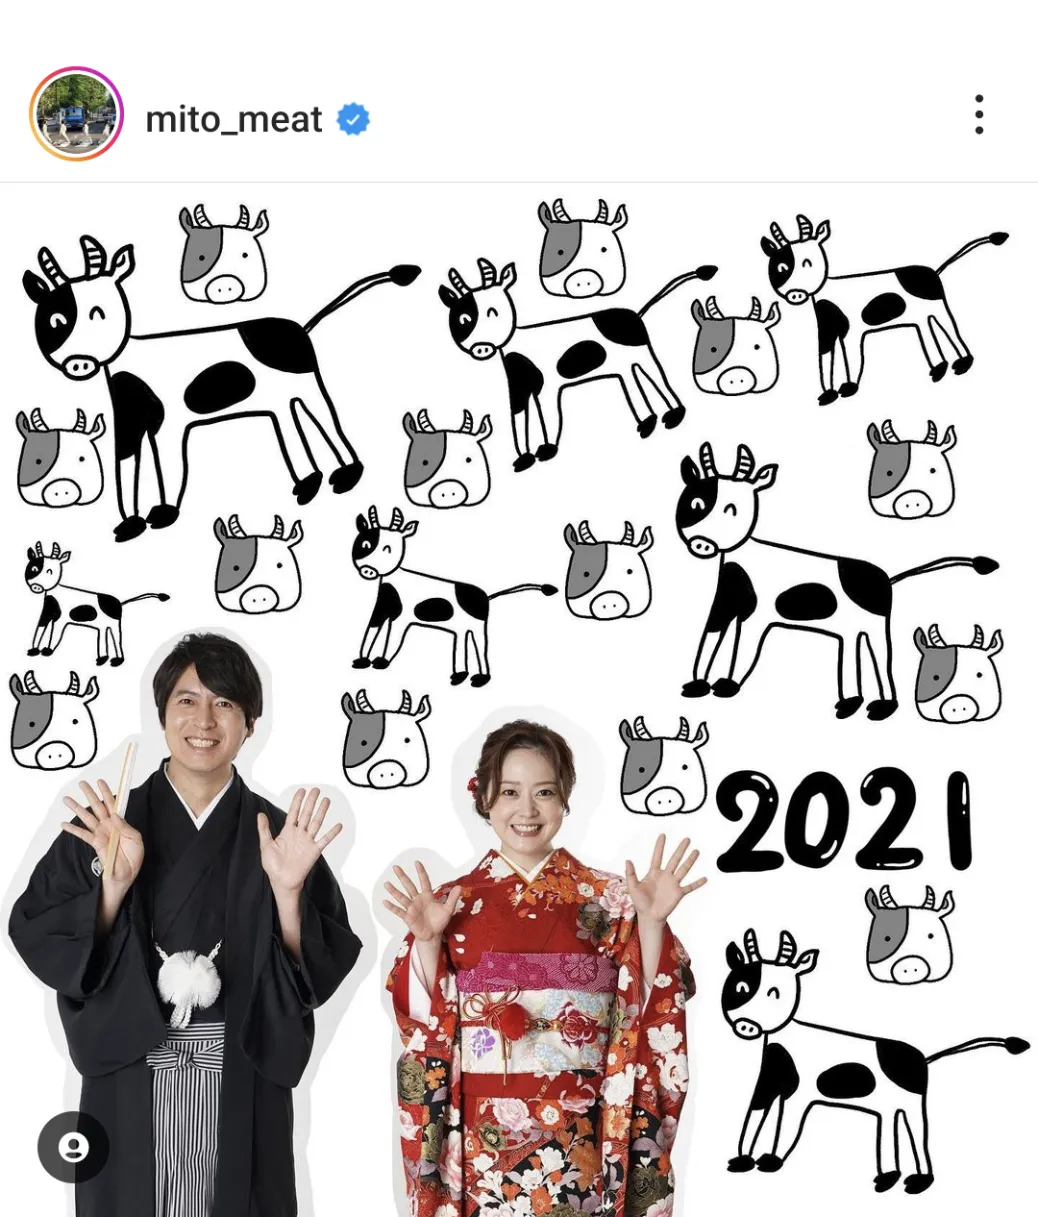  ※水卜麻美公式Instagram(mito_meat)より